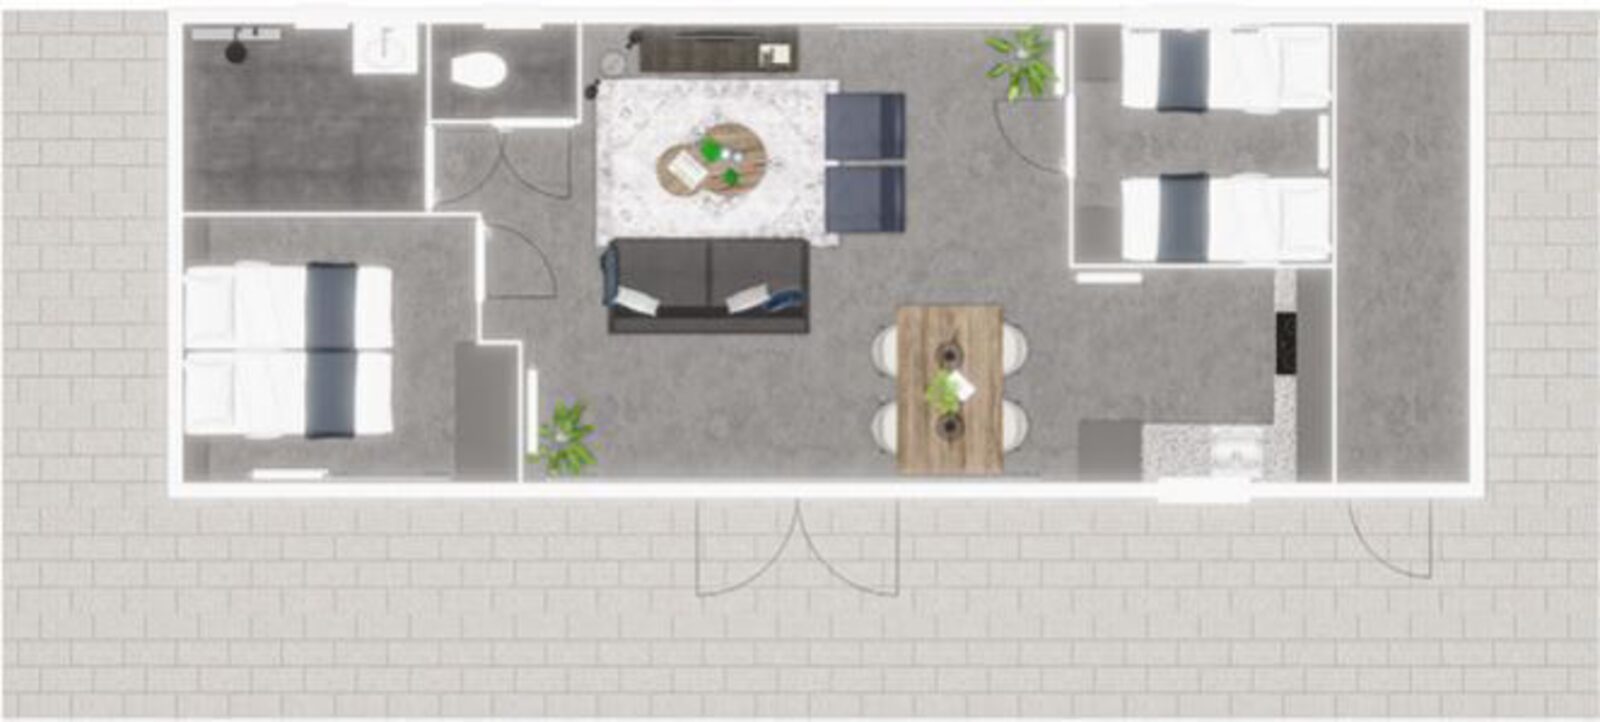 Premium Lodge I 4 personnes (58 m²) - Chiens admis